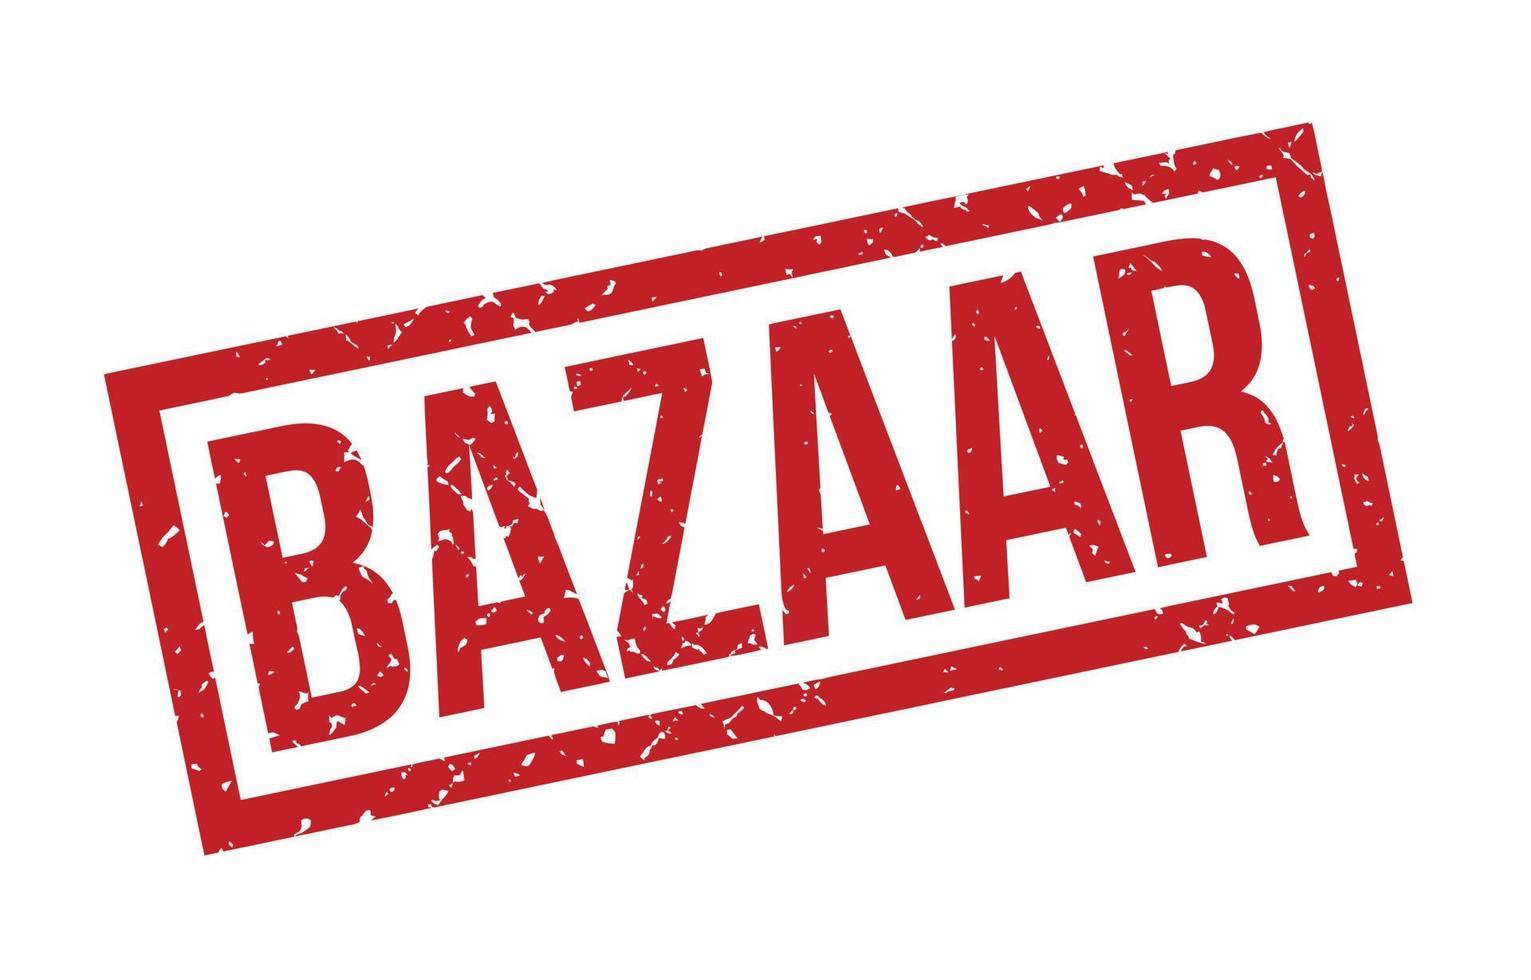 bazaar rubberzegel. rode bazaar rubber grunge stempel zegel vectorillustratie - vector